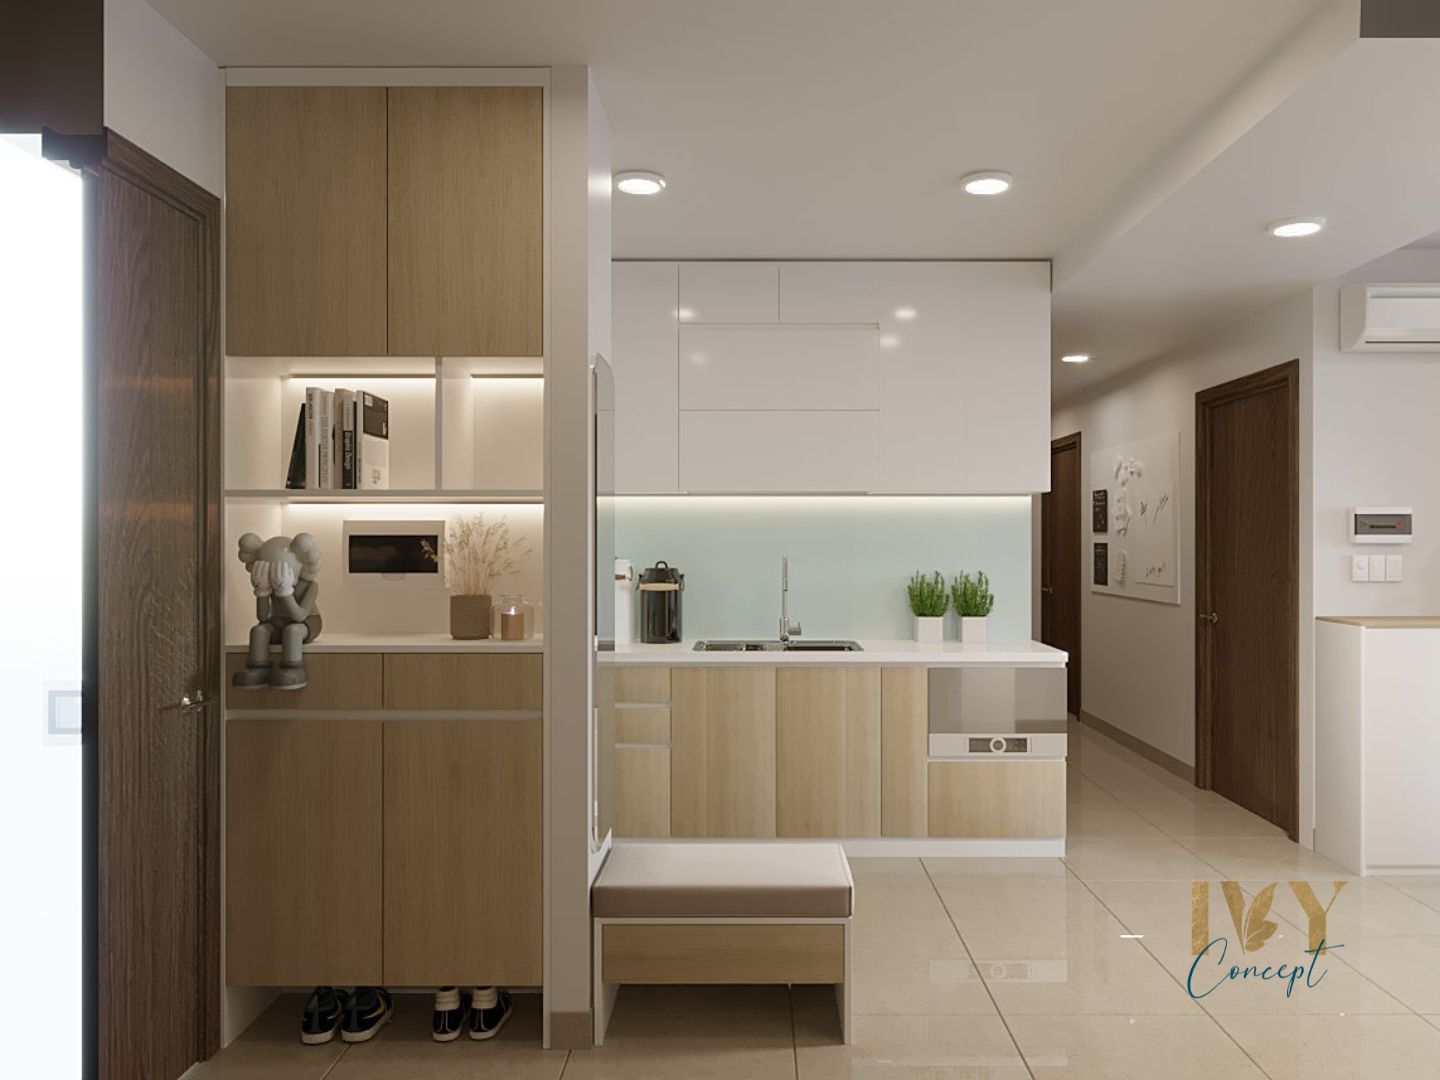 Lối vào, phòng bếp, phong cách Hiện đại Modern, thiết kế concept nội thất, căn hộ River Panorama